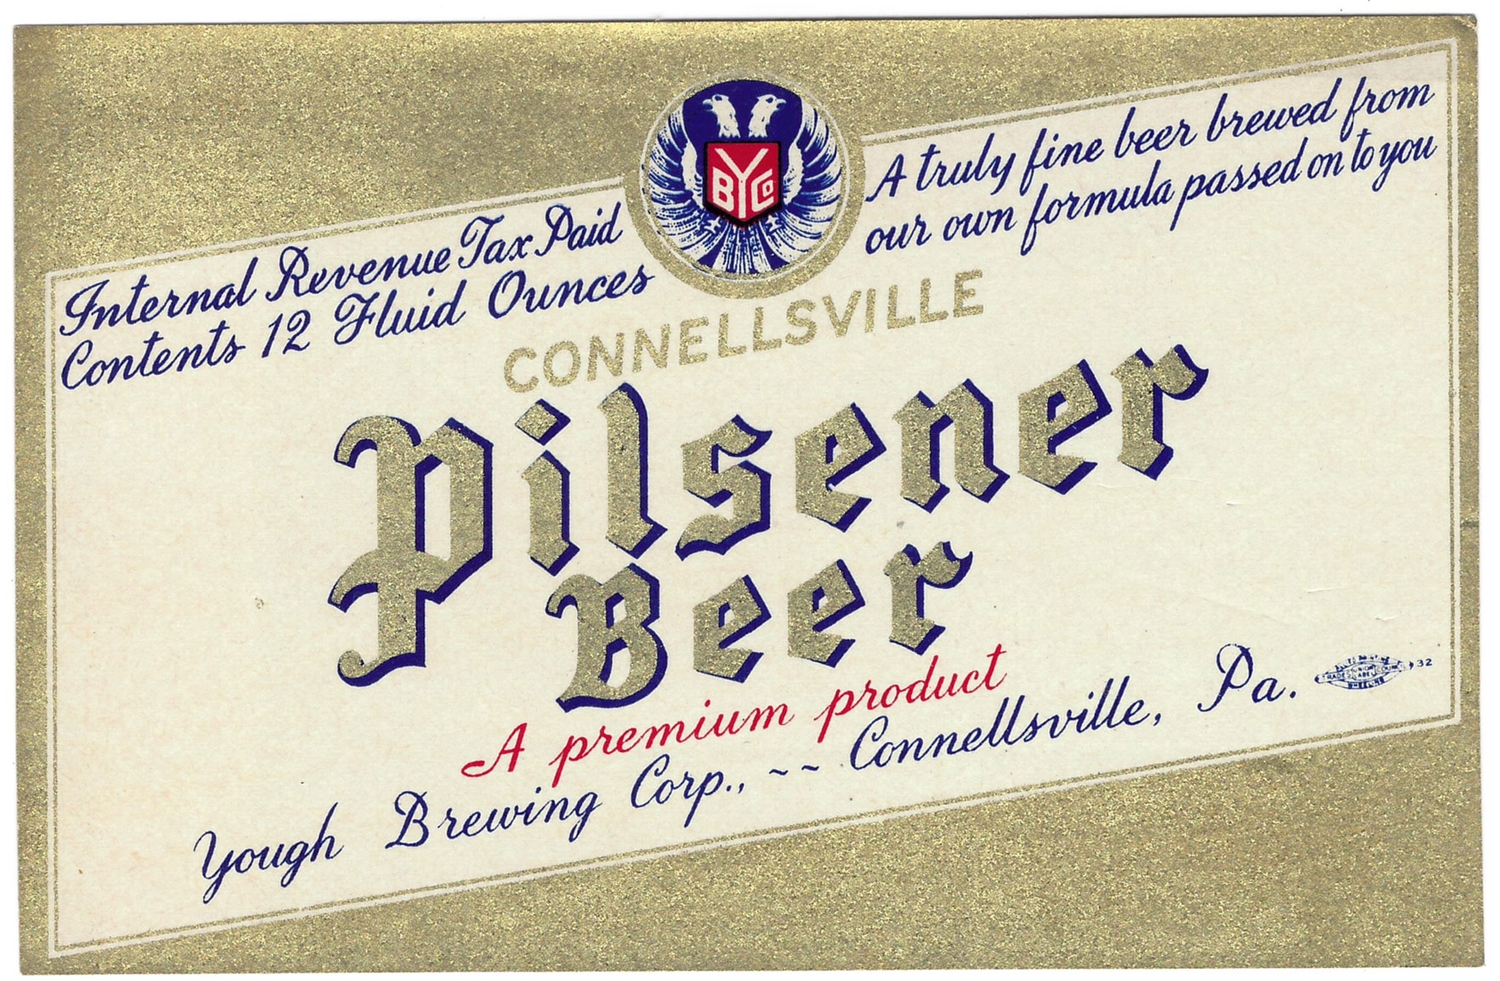 Connellsville Pilsener Beer IRTP Label